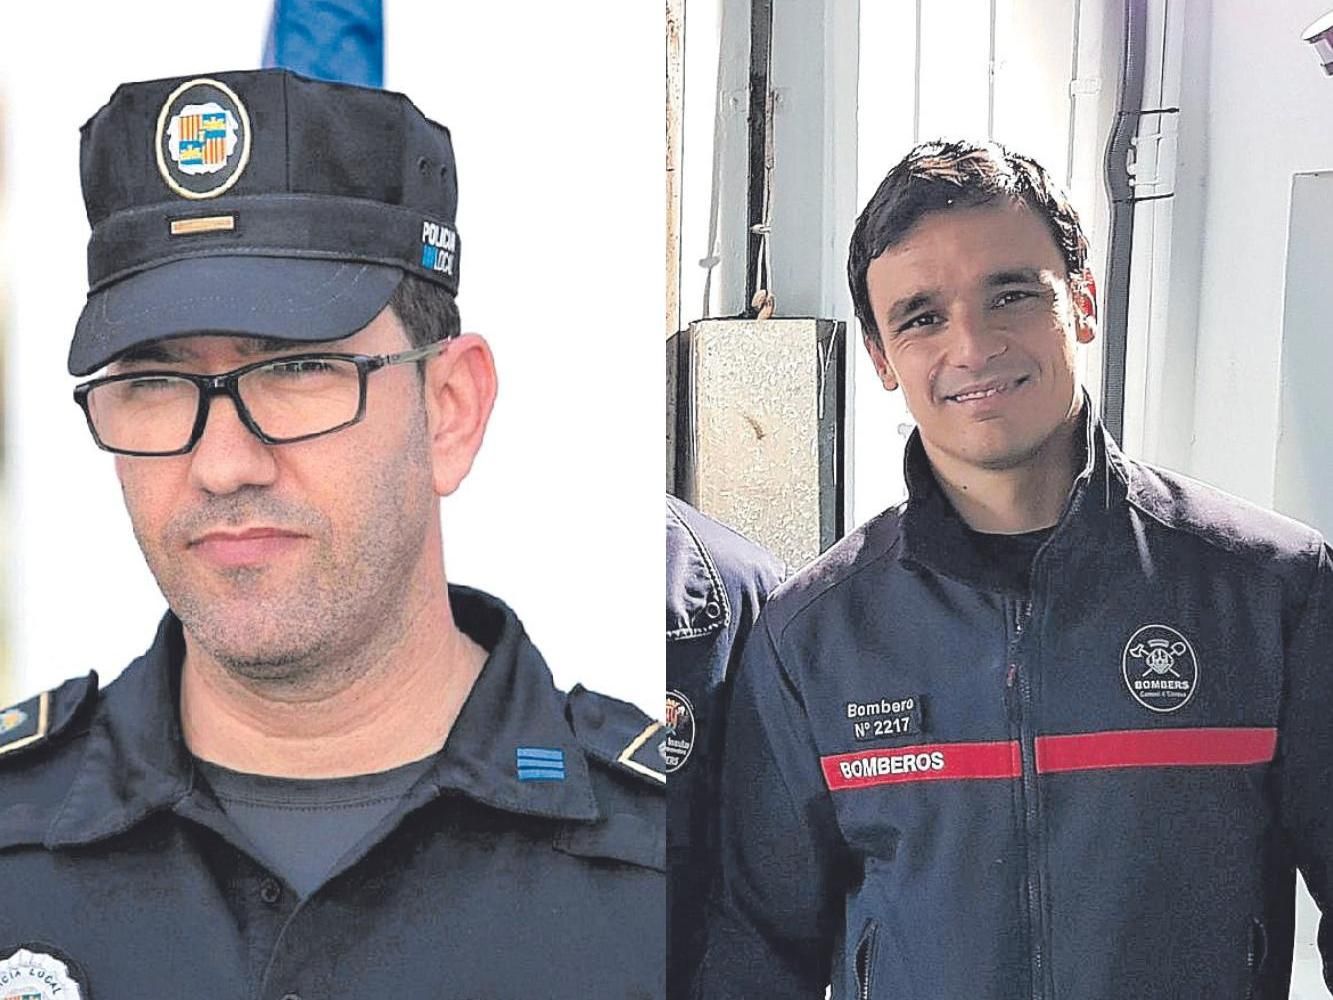 Jose Antonio Granados y Bruno Roig, community managers de Policía Local de Sant Josep y bomberos de Ibiza